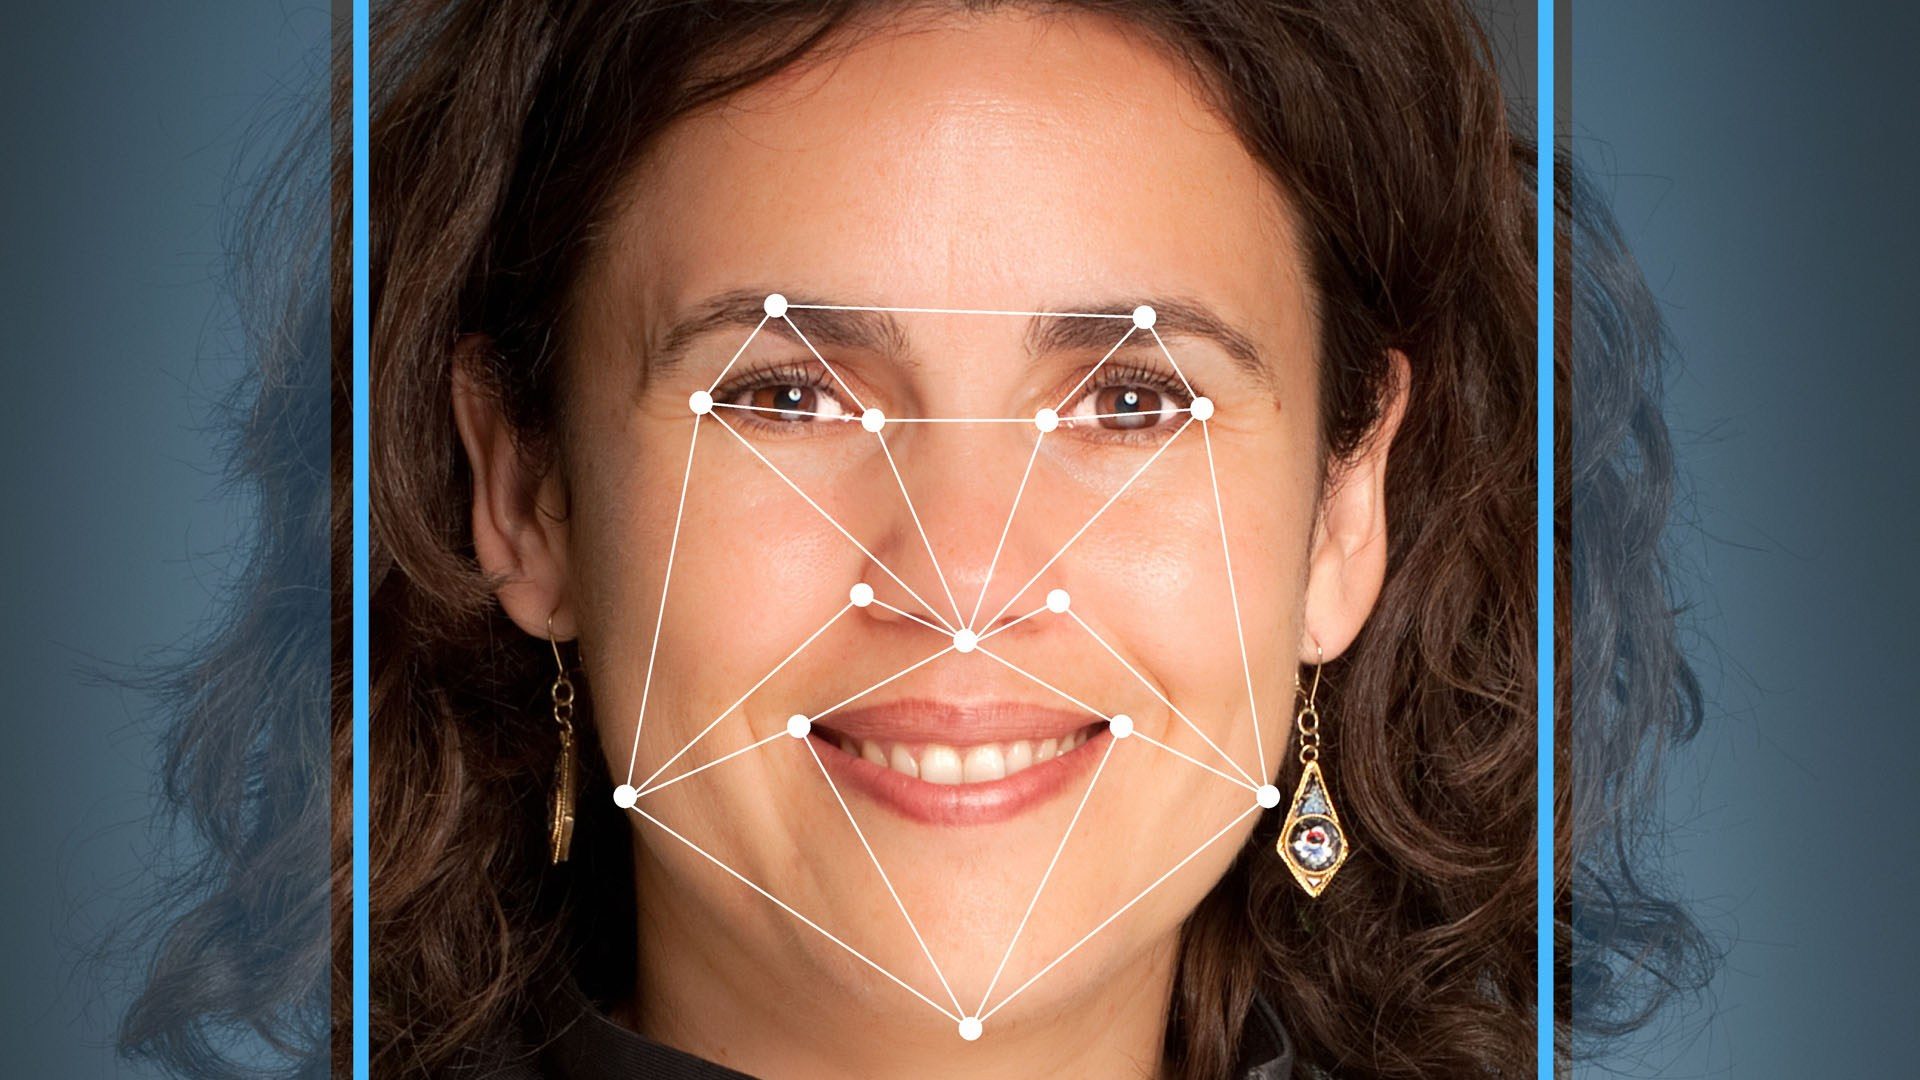 Face facial recognition